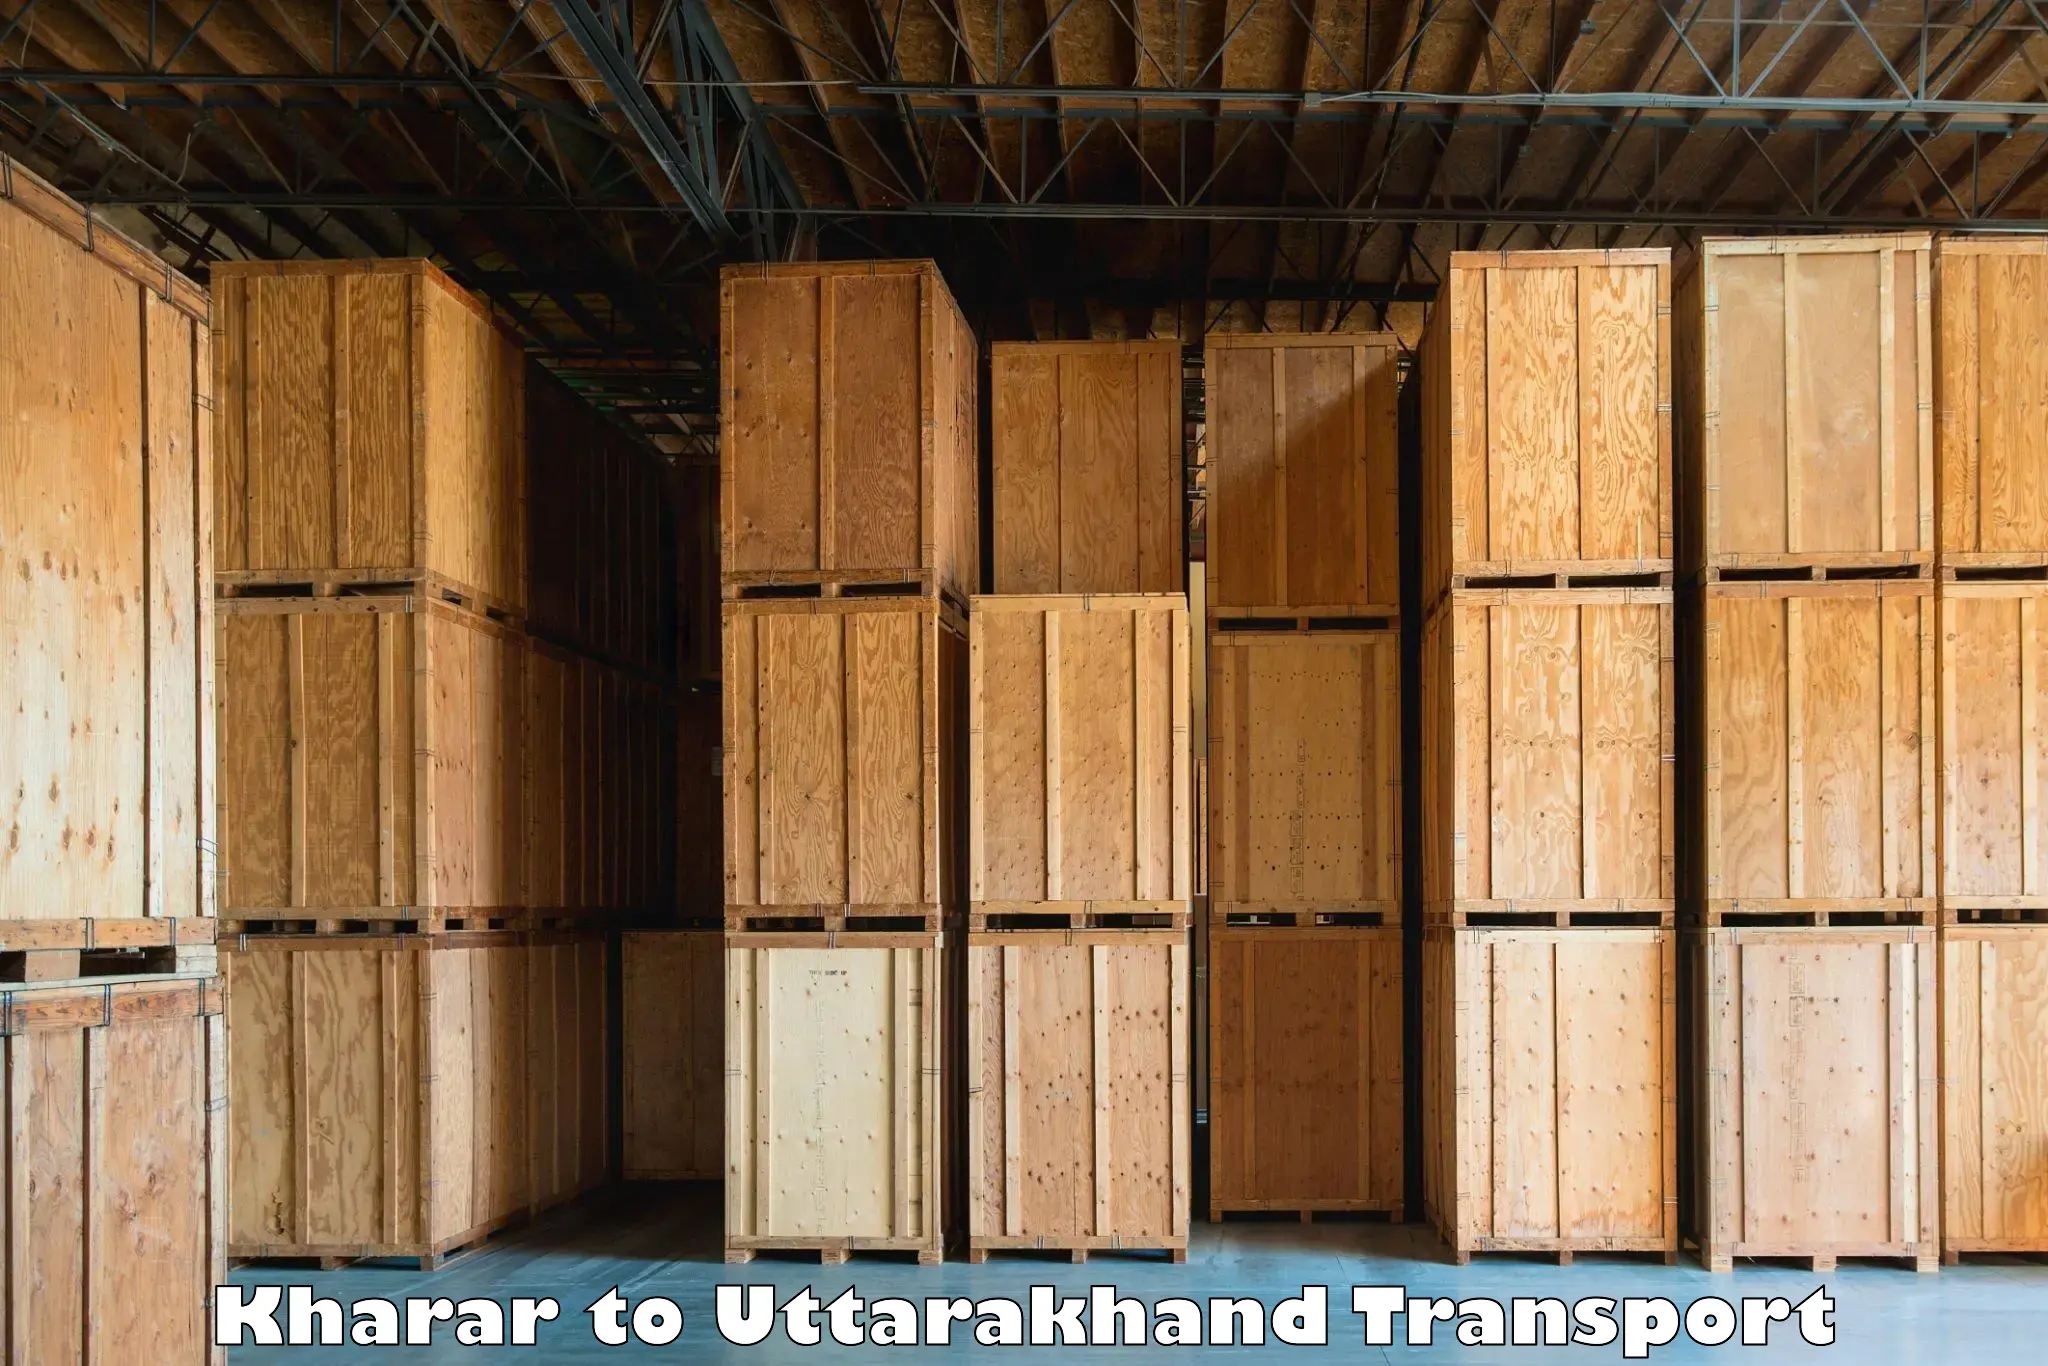 Transport in sharing Kharar to Lansdowne